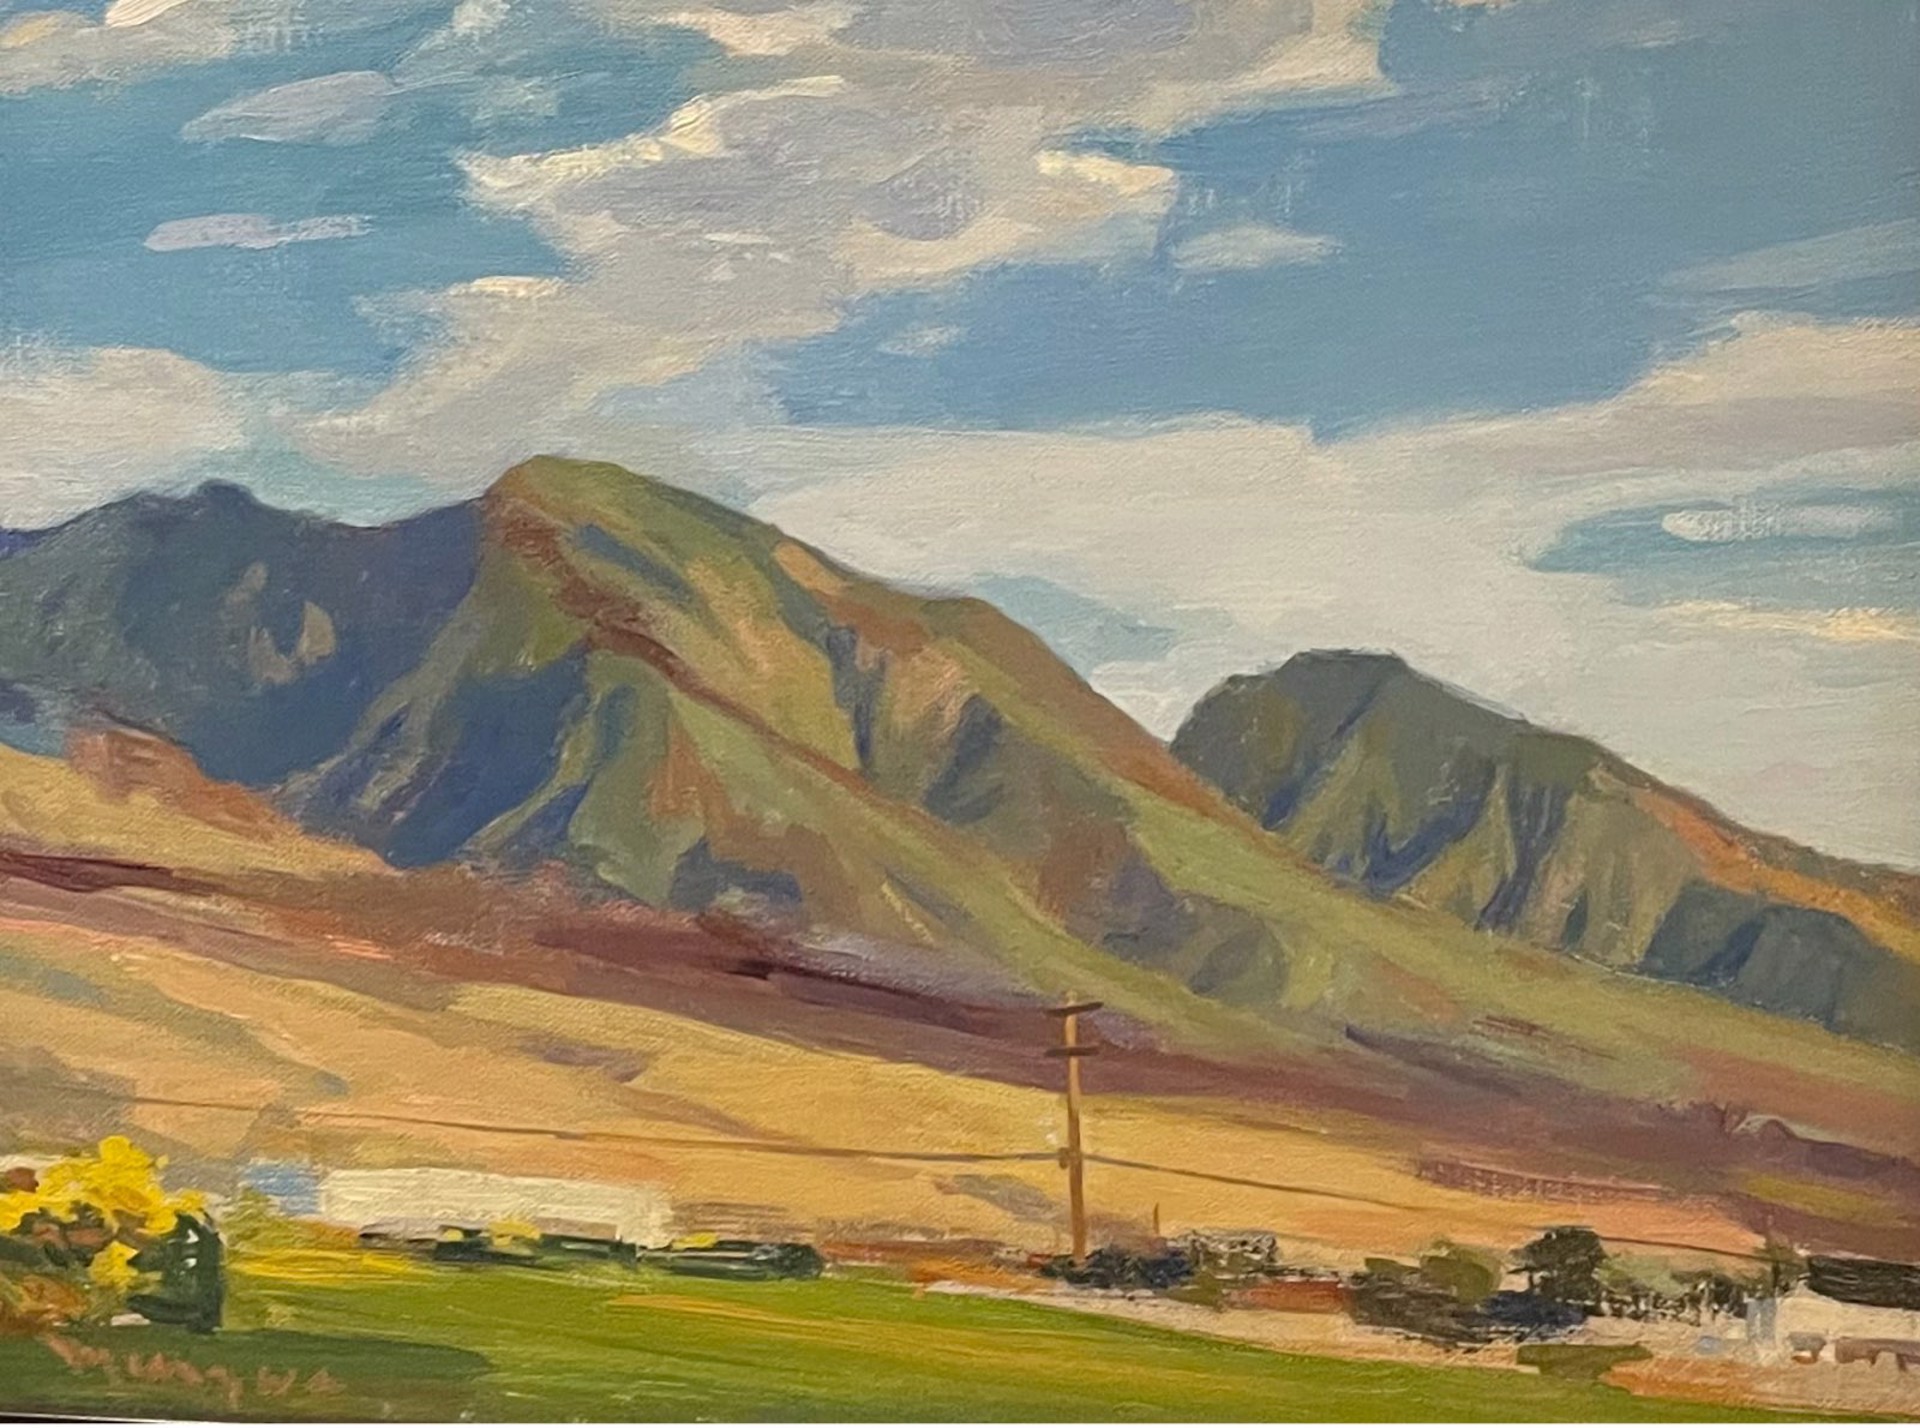 West Maui Mountain by Adrienne Mierzwa